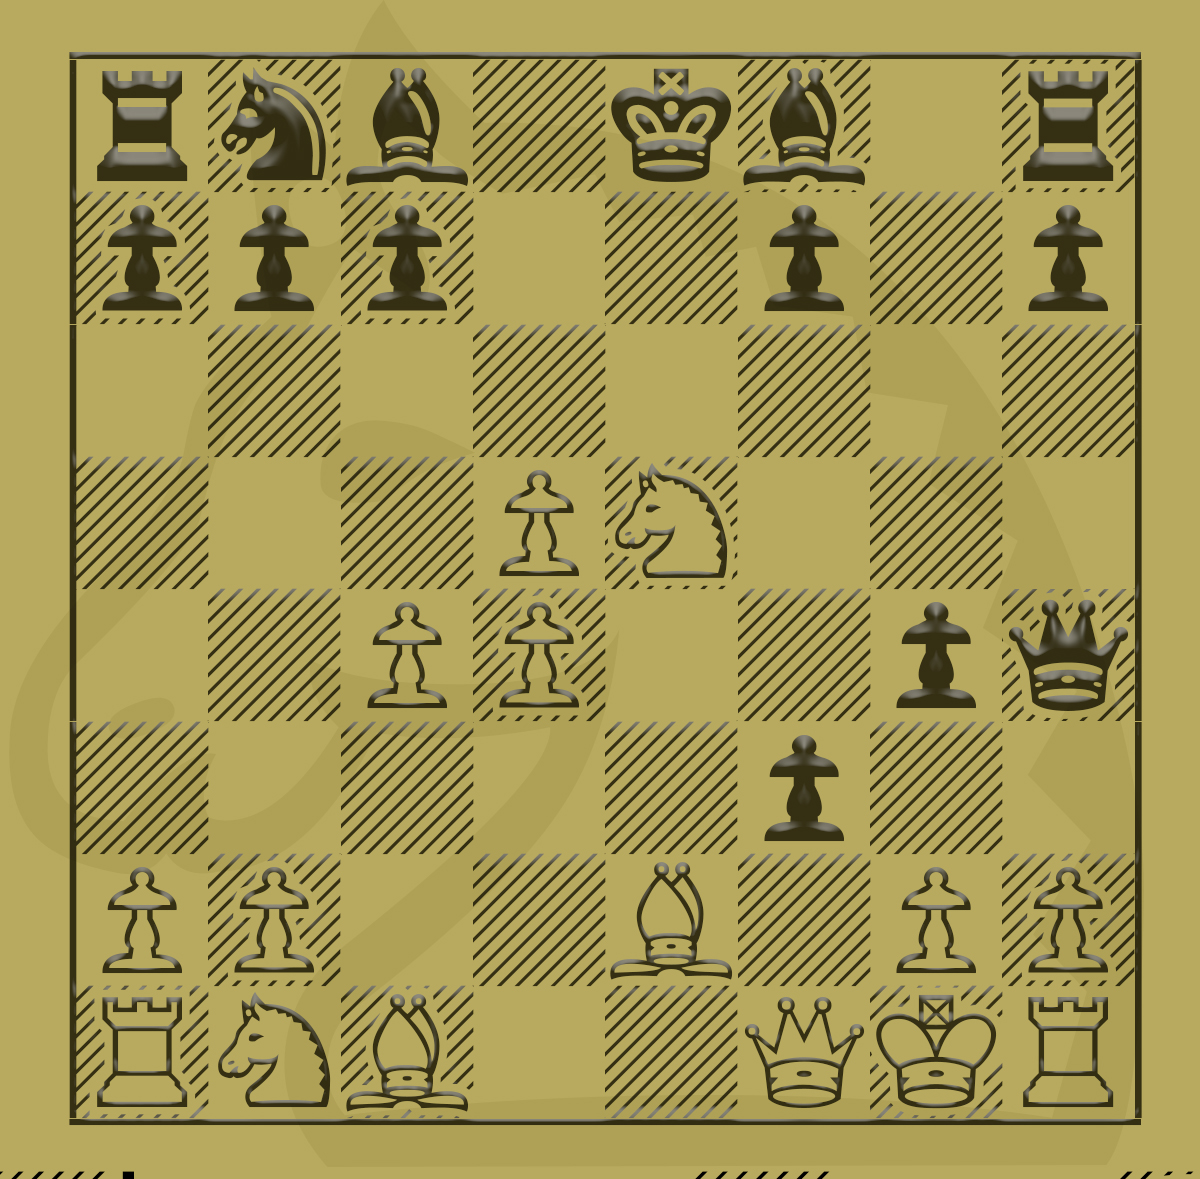 Capablanca's Best Chess Endings Pdf - Fill Online, Printable